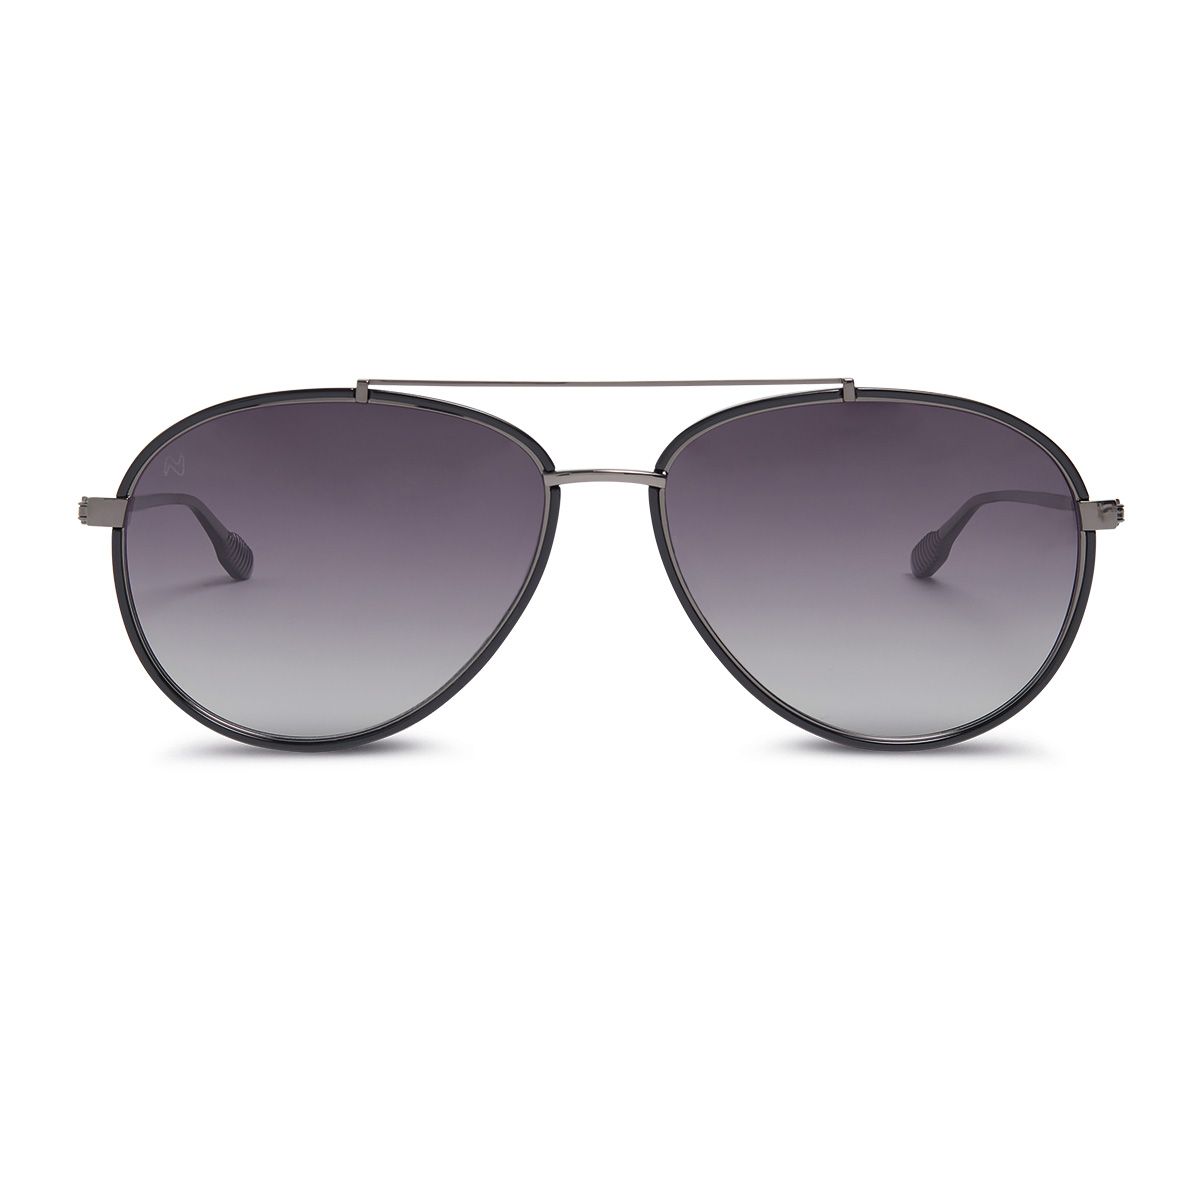 JET Pilot Sunglasses BLACK - size 57